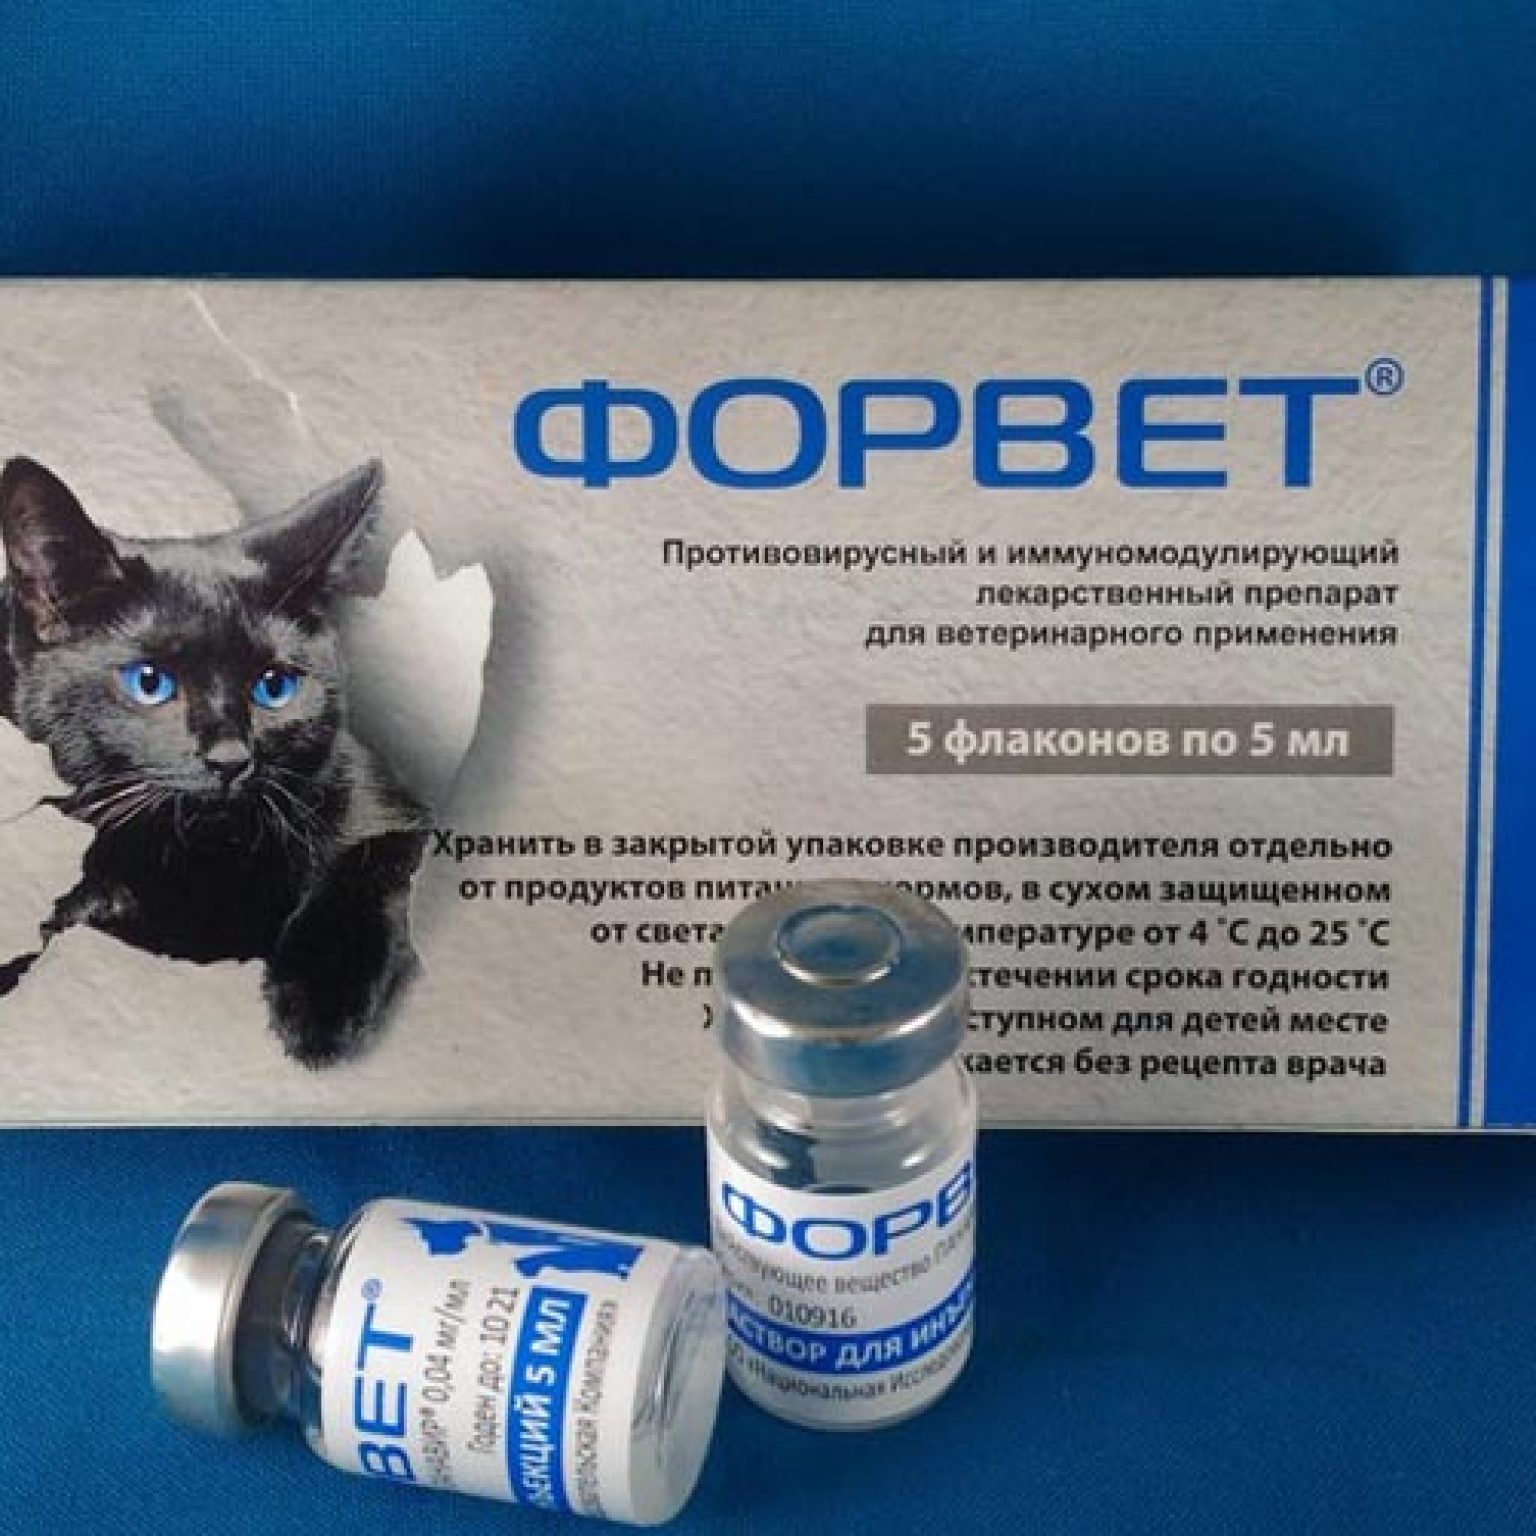 Антибиотик для глаз кошке. Форвет для кошек. Лекарственные средства для животных. Форвет инъекции. Противовирусные препараты для кошек.